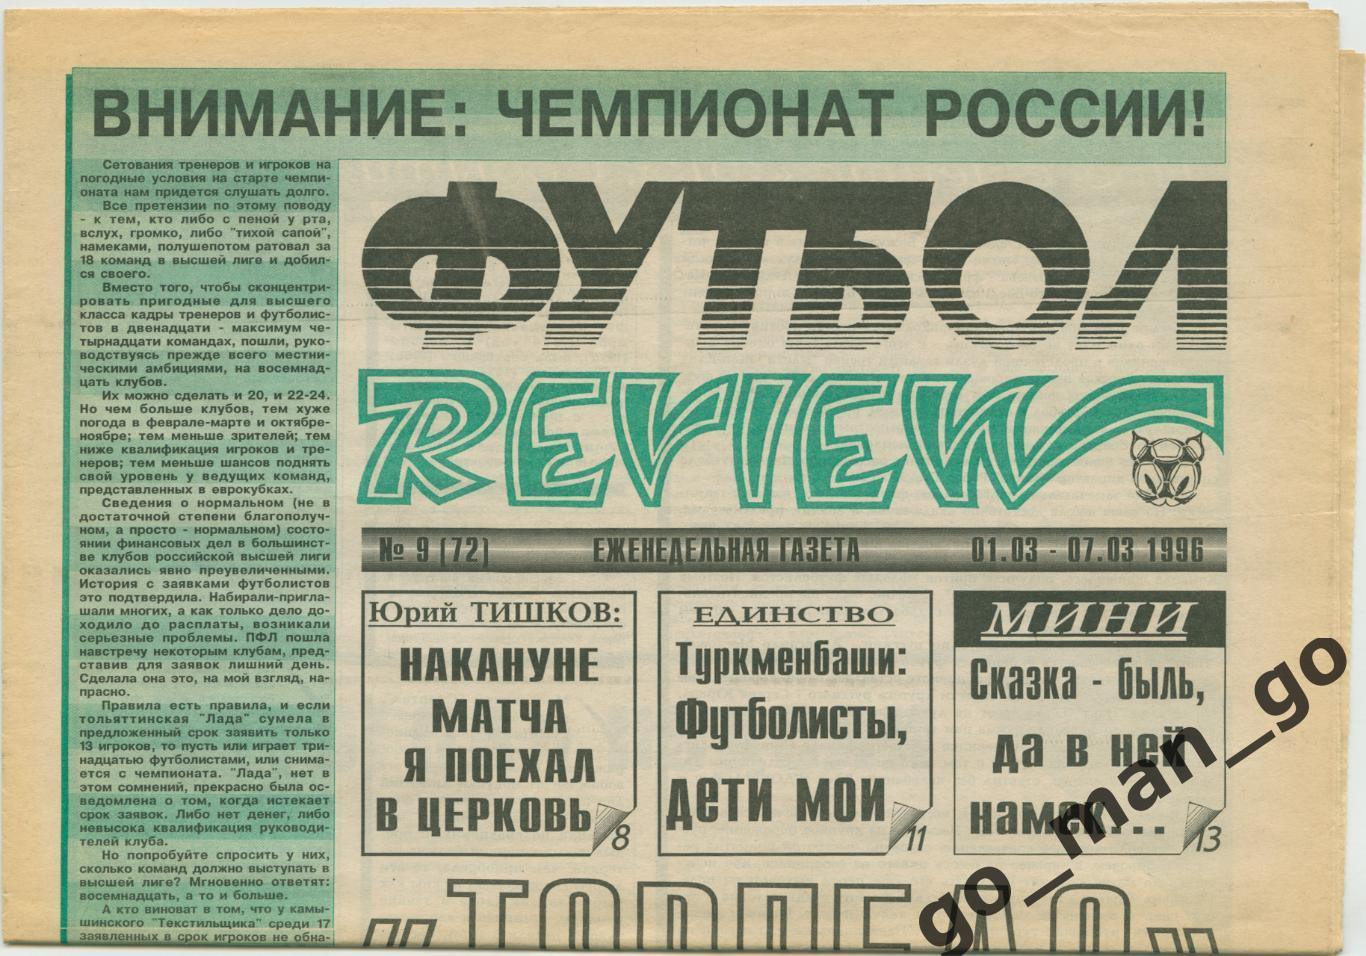 Еженедельник Футбол-Review (Футбол-Ревю), 01-07.03.1996, № 9.